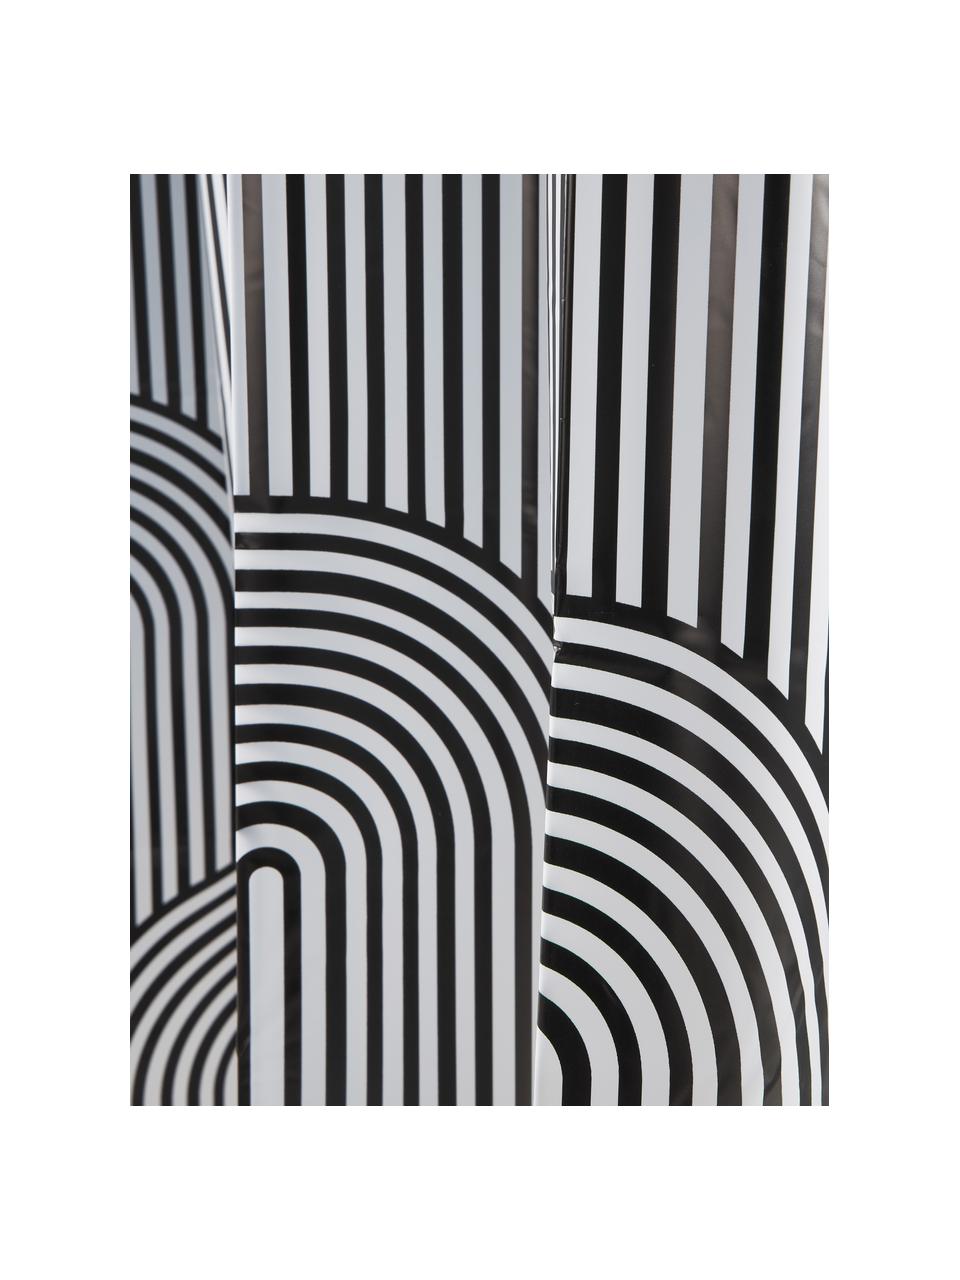 Duschvorhang Brave in Weiß/Schwarz, 100% Kunststoff (PEVA), Schwarz, Weiß, B 180 x L 200 cm